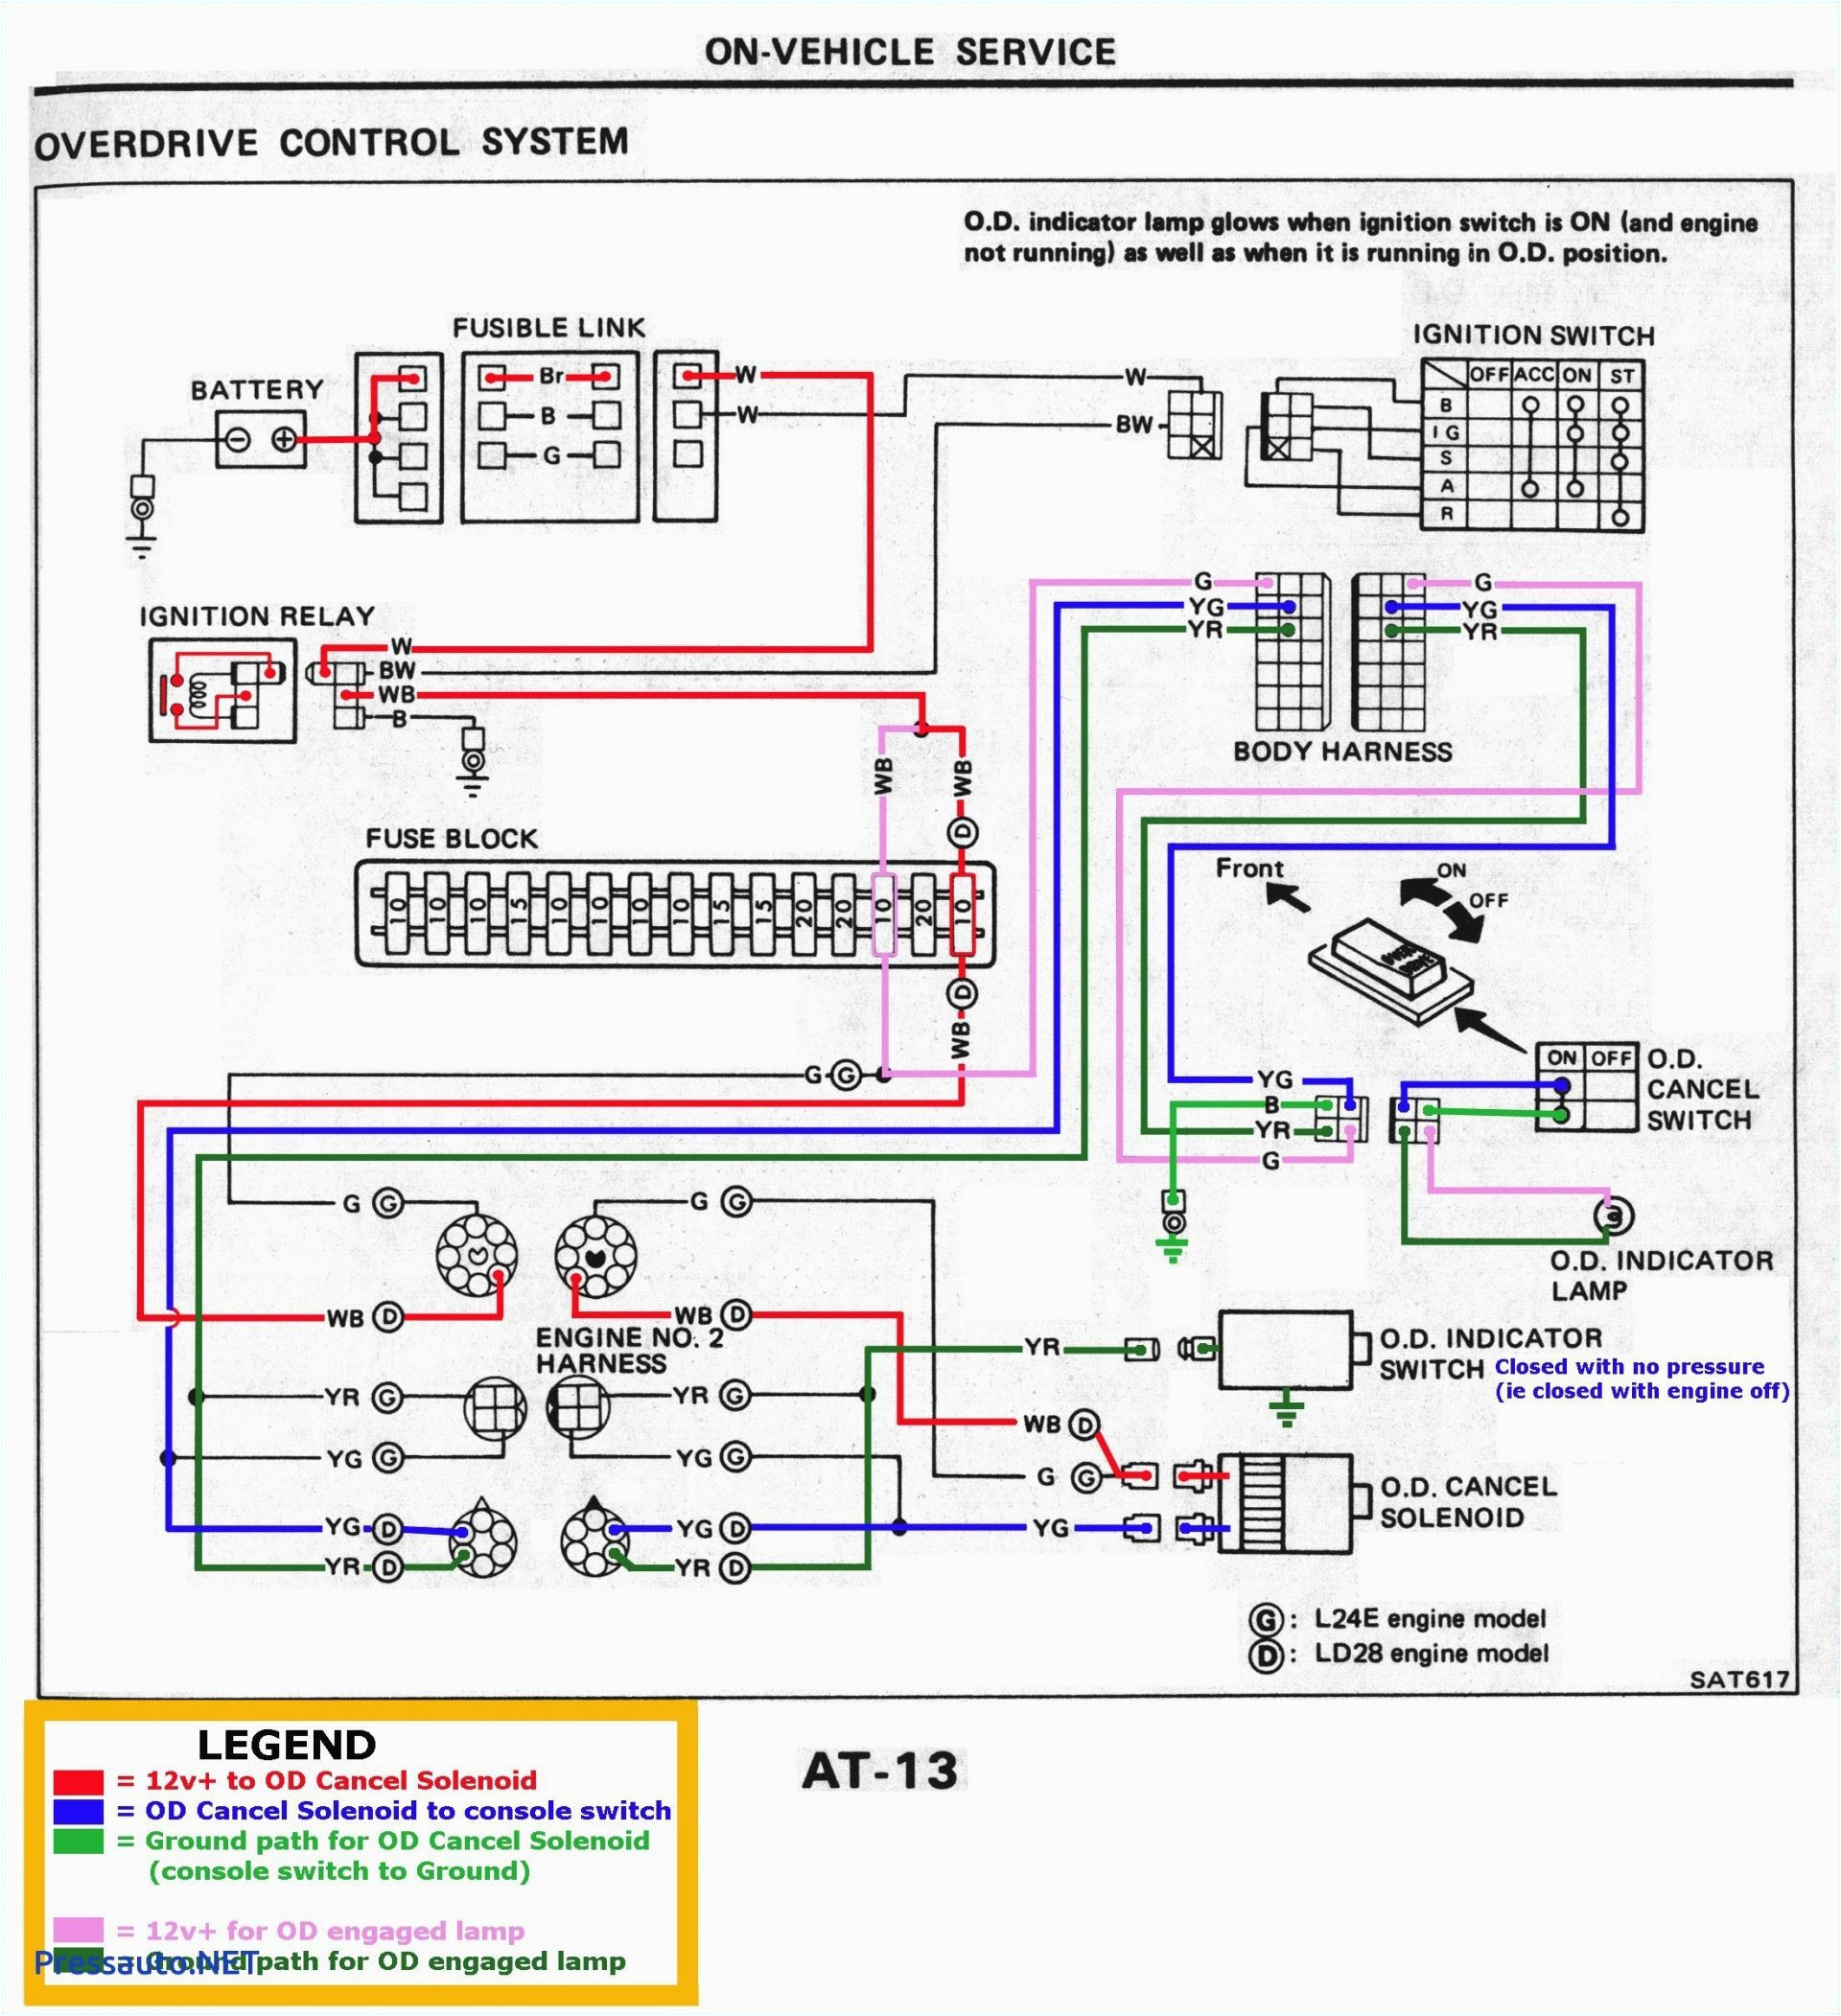 kw wiring diagram wiring diagram icu kw wiring diagram wiring diagram toolboxicu kw wiring diagram wiring